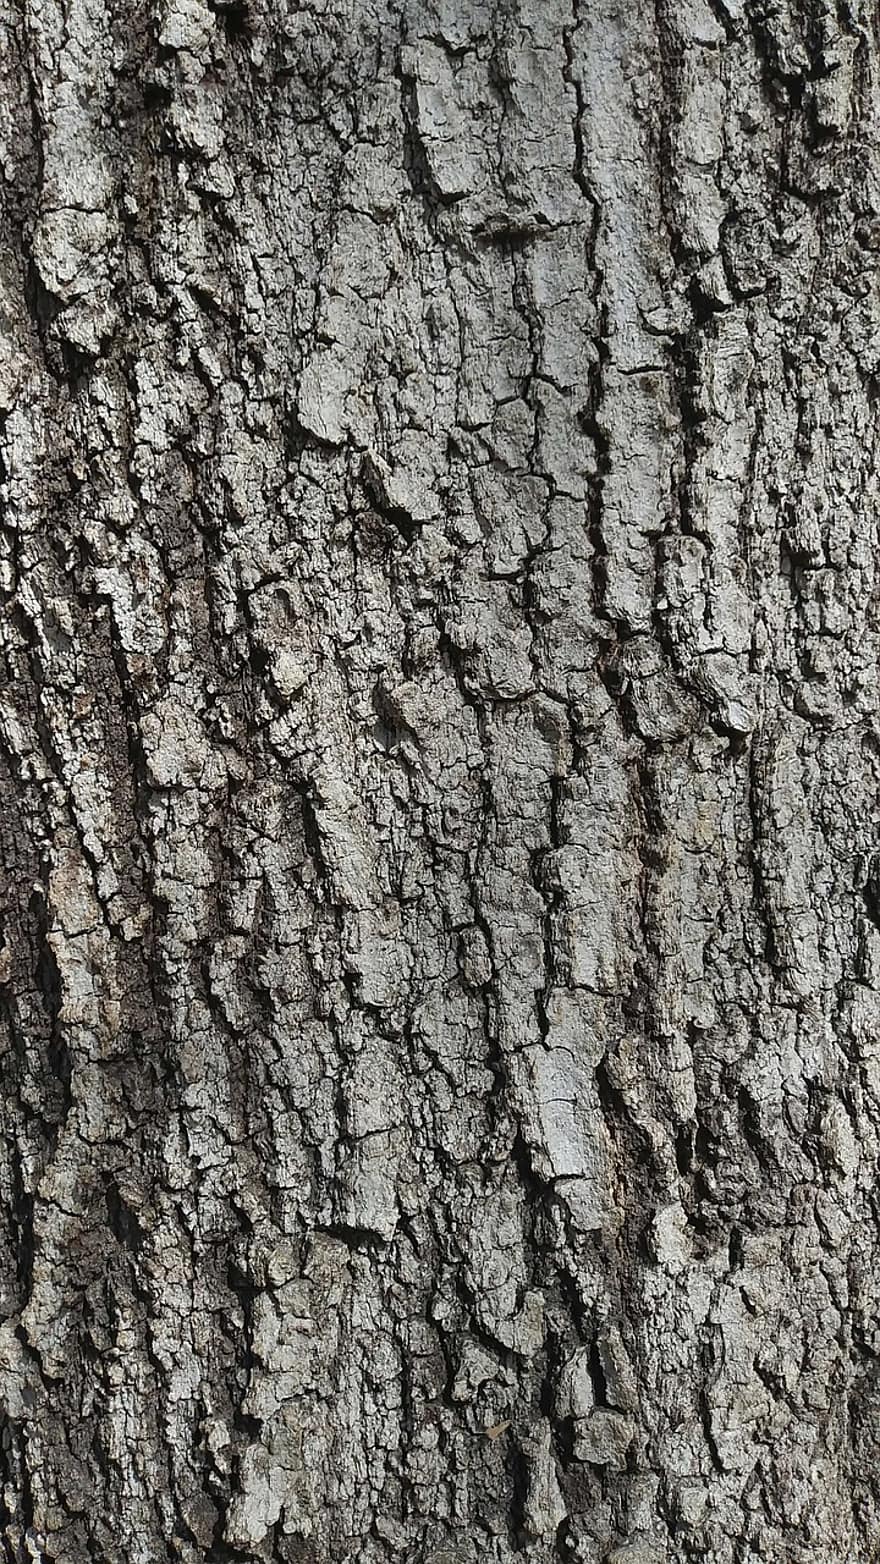 arbre, écorce, bois, texture, marron, rugueux, chêne, arrière-plans, fermer, modèle, tronc d'arbre